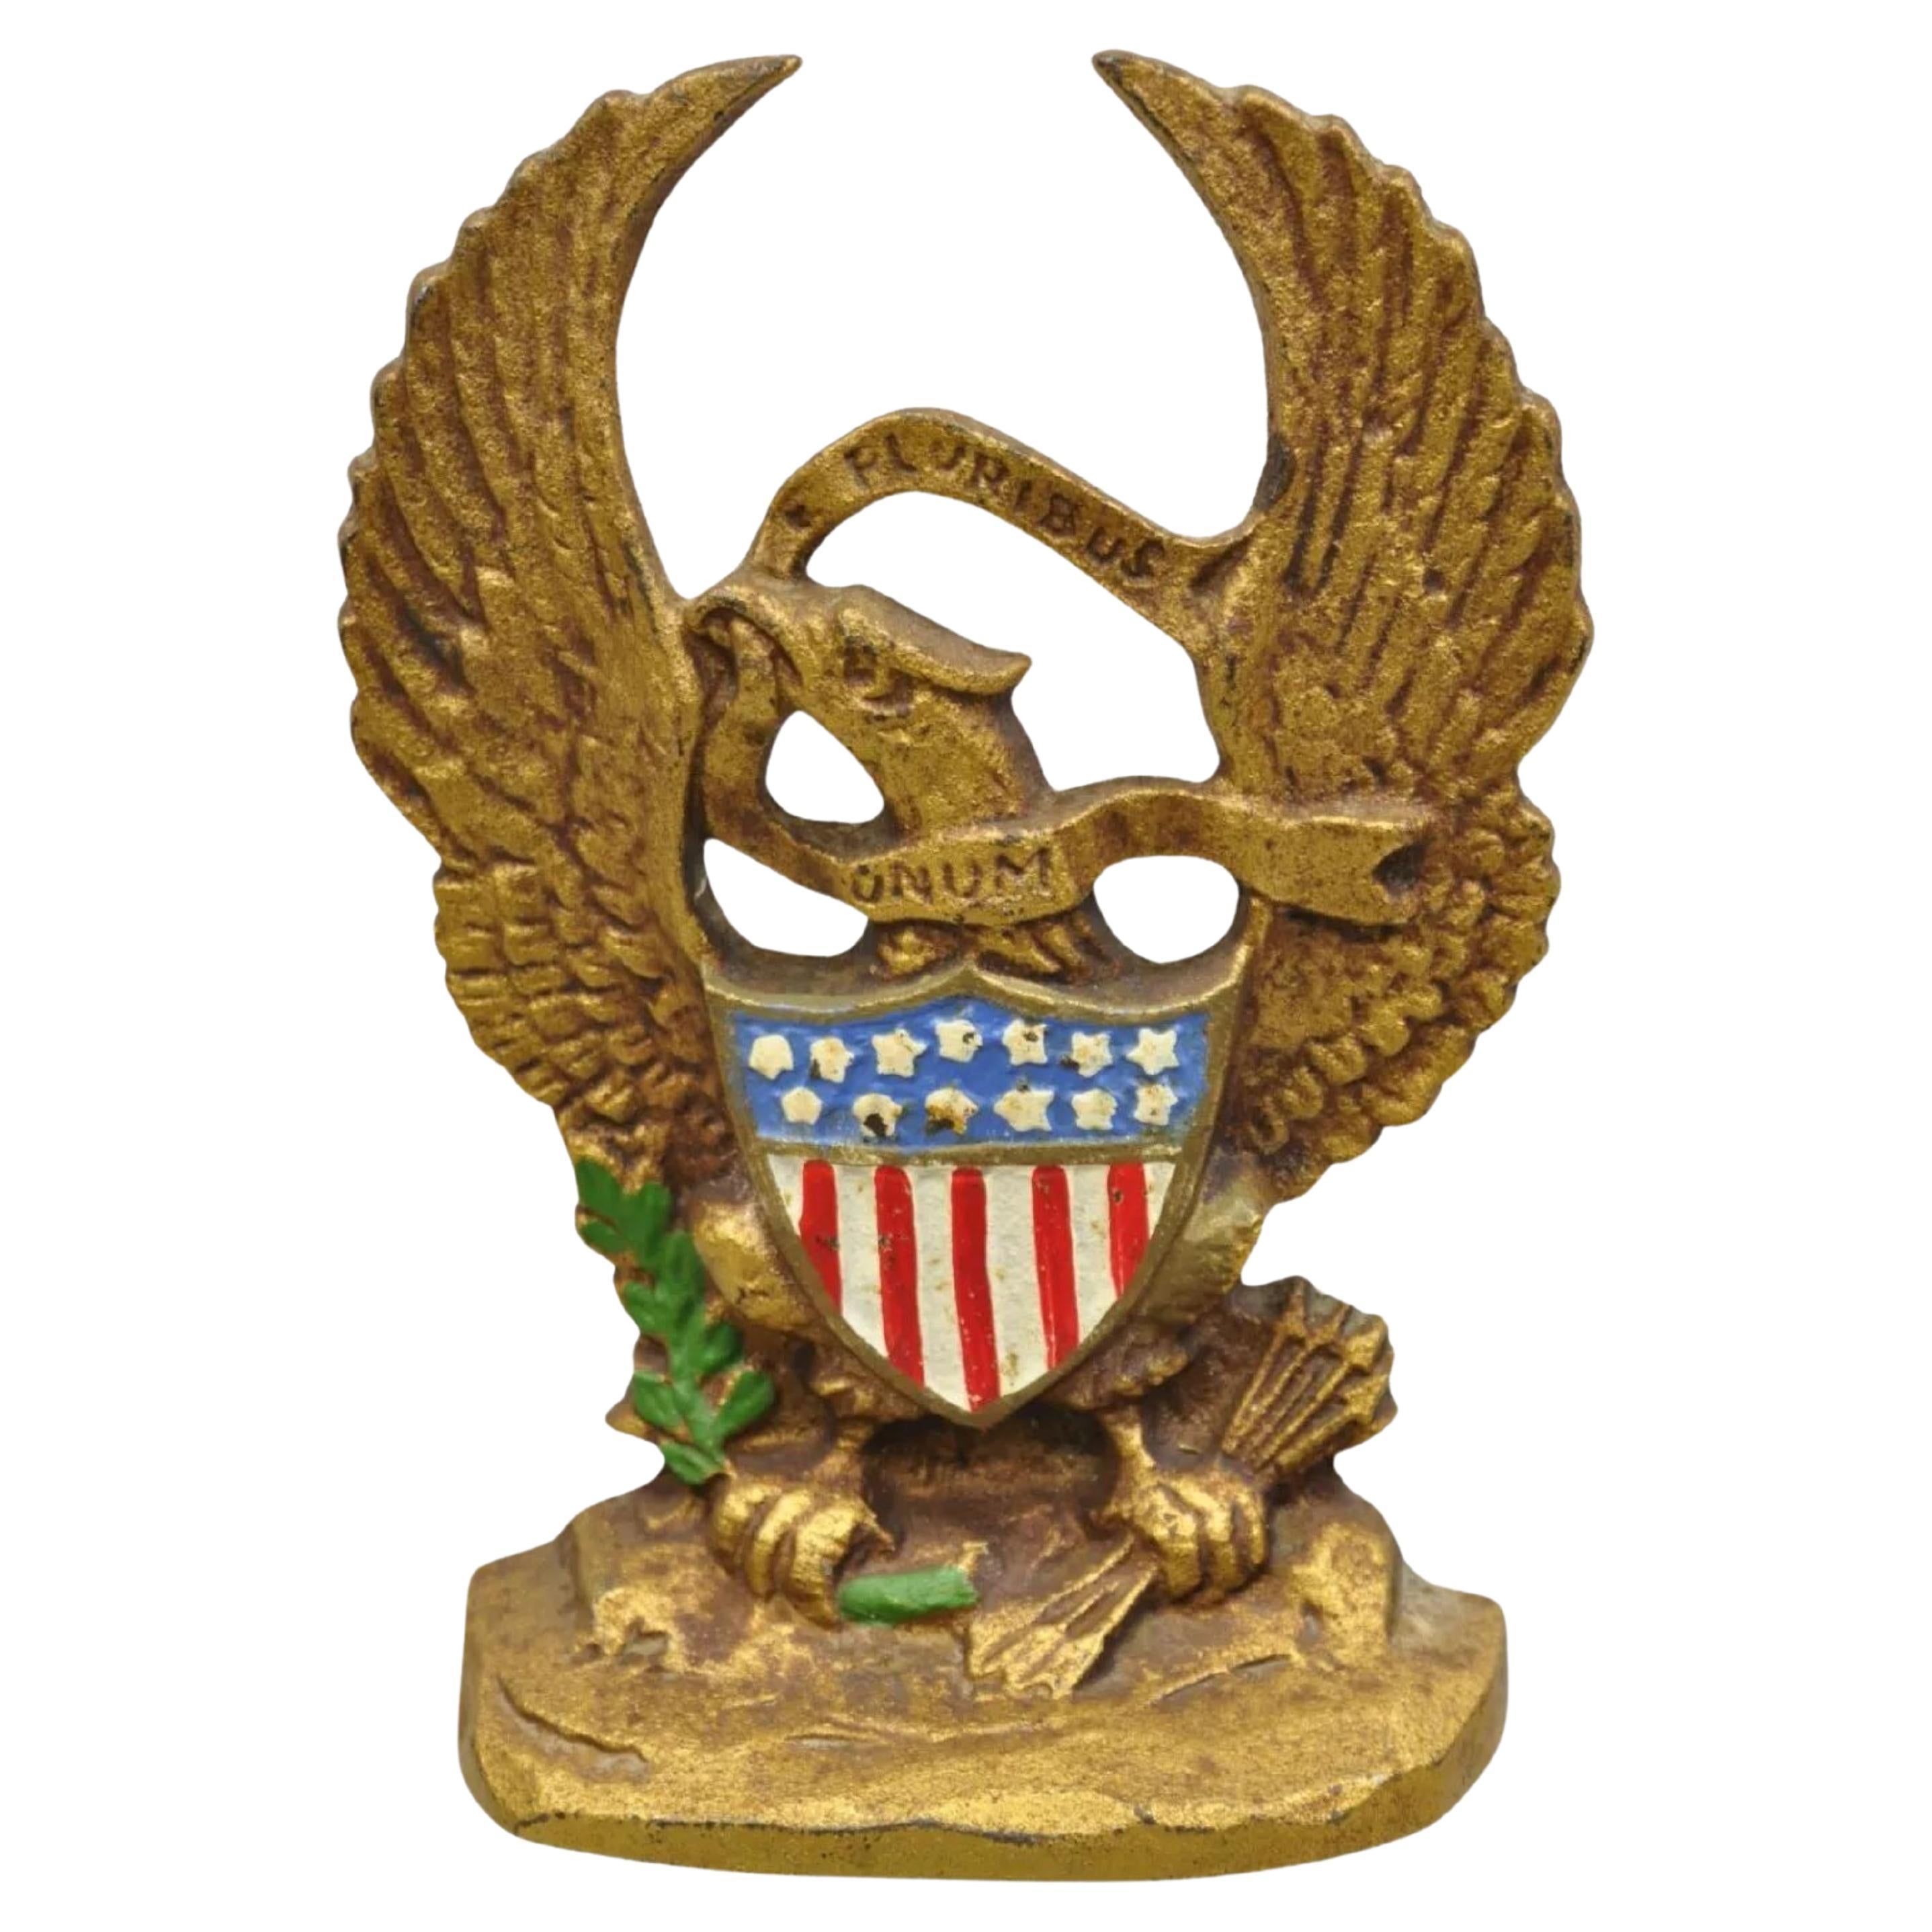 Antique butoir de porte patriotique en fonte peint du drapeau américain en or et d'un aigle